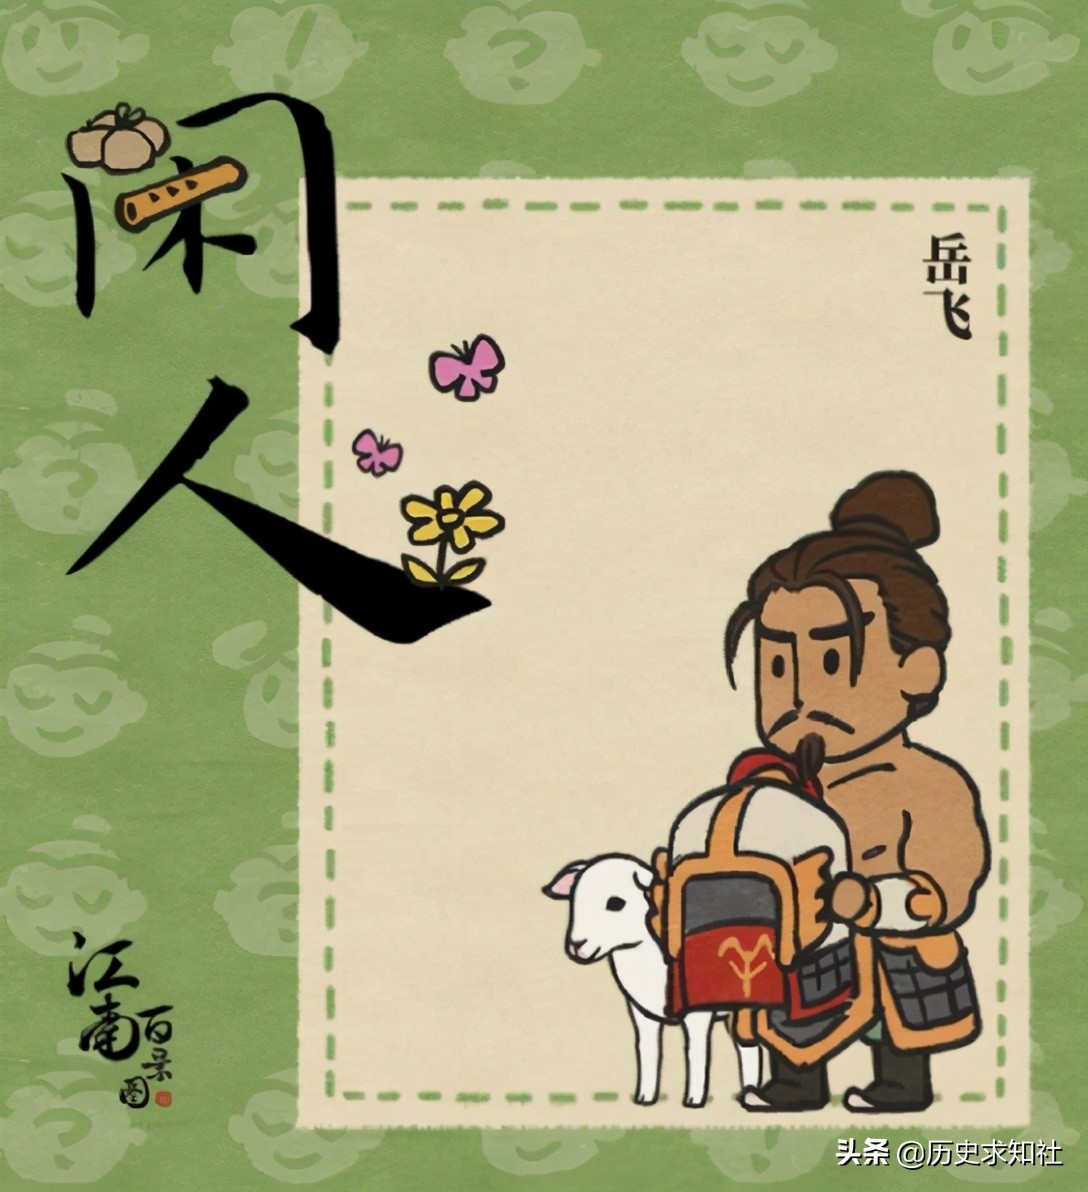 游戏《江南百景图》竟把岳飞设计成肉袒牵羊，这到底是什么意思